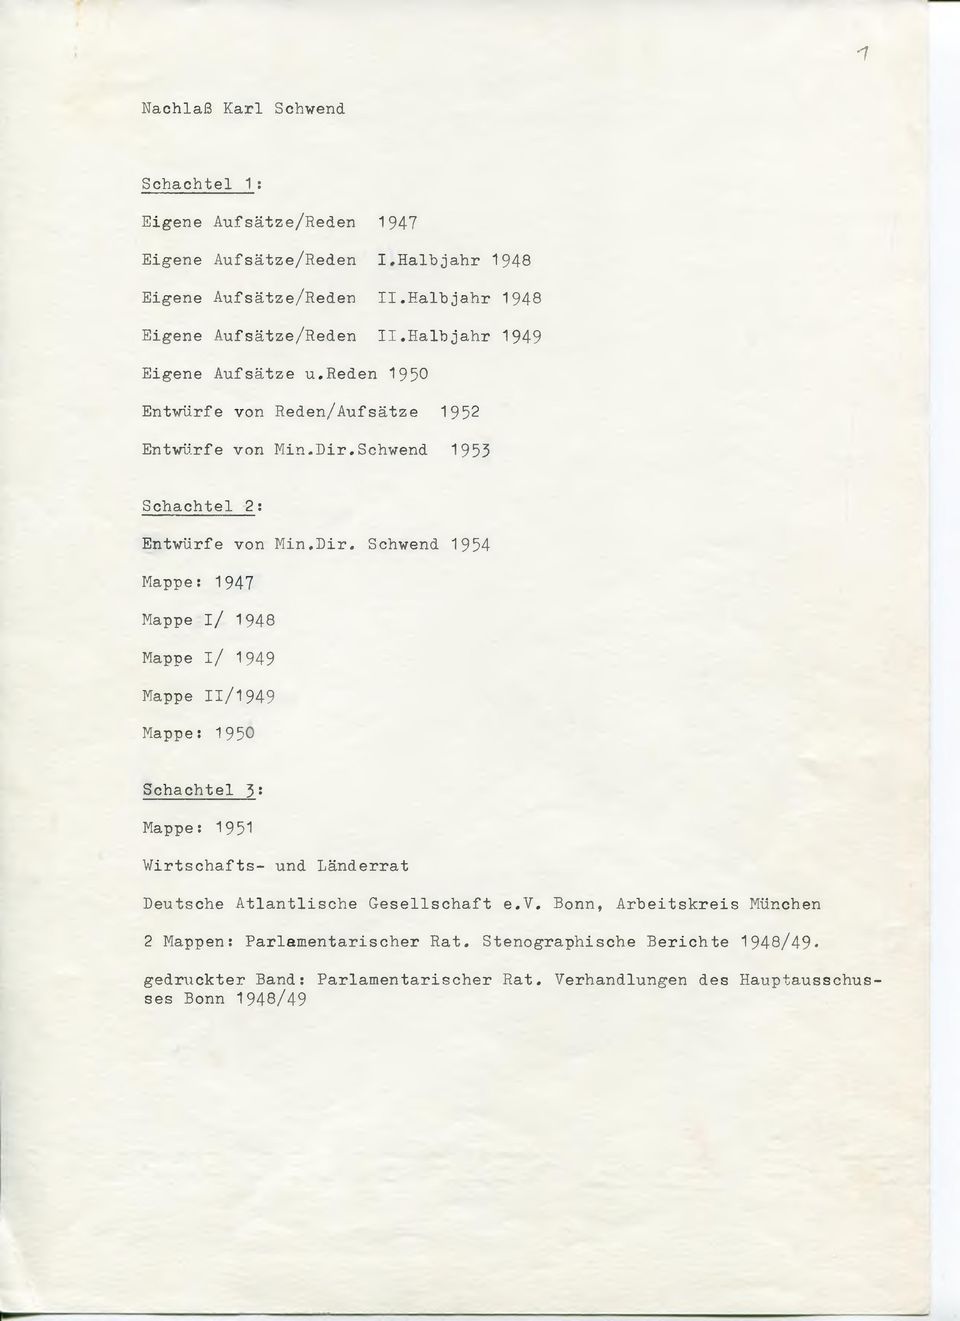 Schwend 1953 Schachtel 2: Entwürfe von Min.Dir.